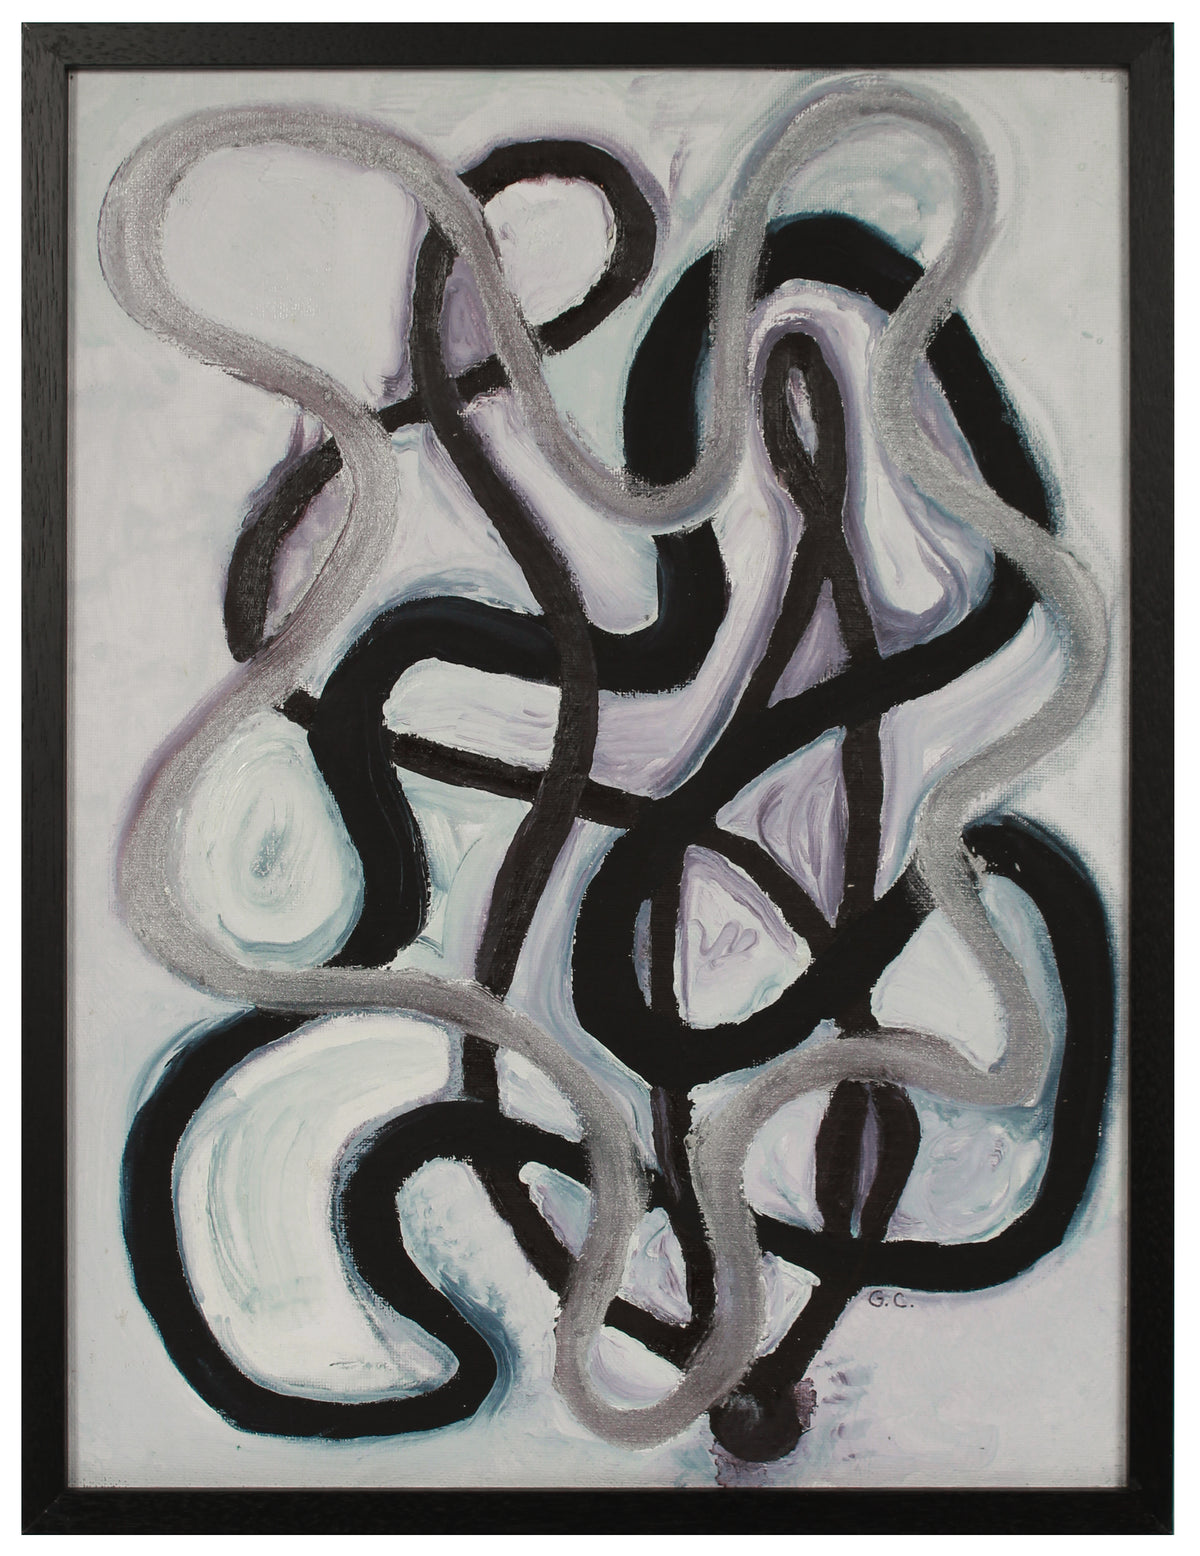 &lt;i&gt;Black, Brown, Silver, Composition Abstract &lt;/i&gt; &lt;br&gt;2020 Oil on Canvas Mounted to Board &lt;br&gt;&lt;br&gt;#B2053